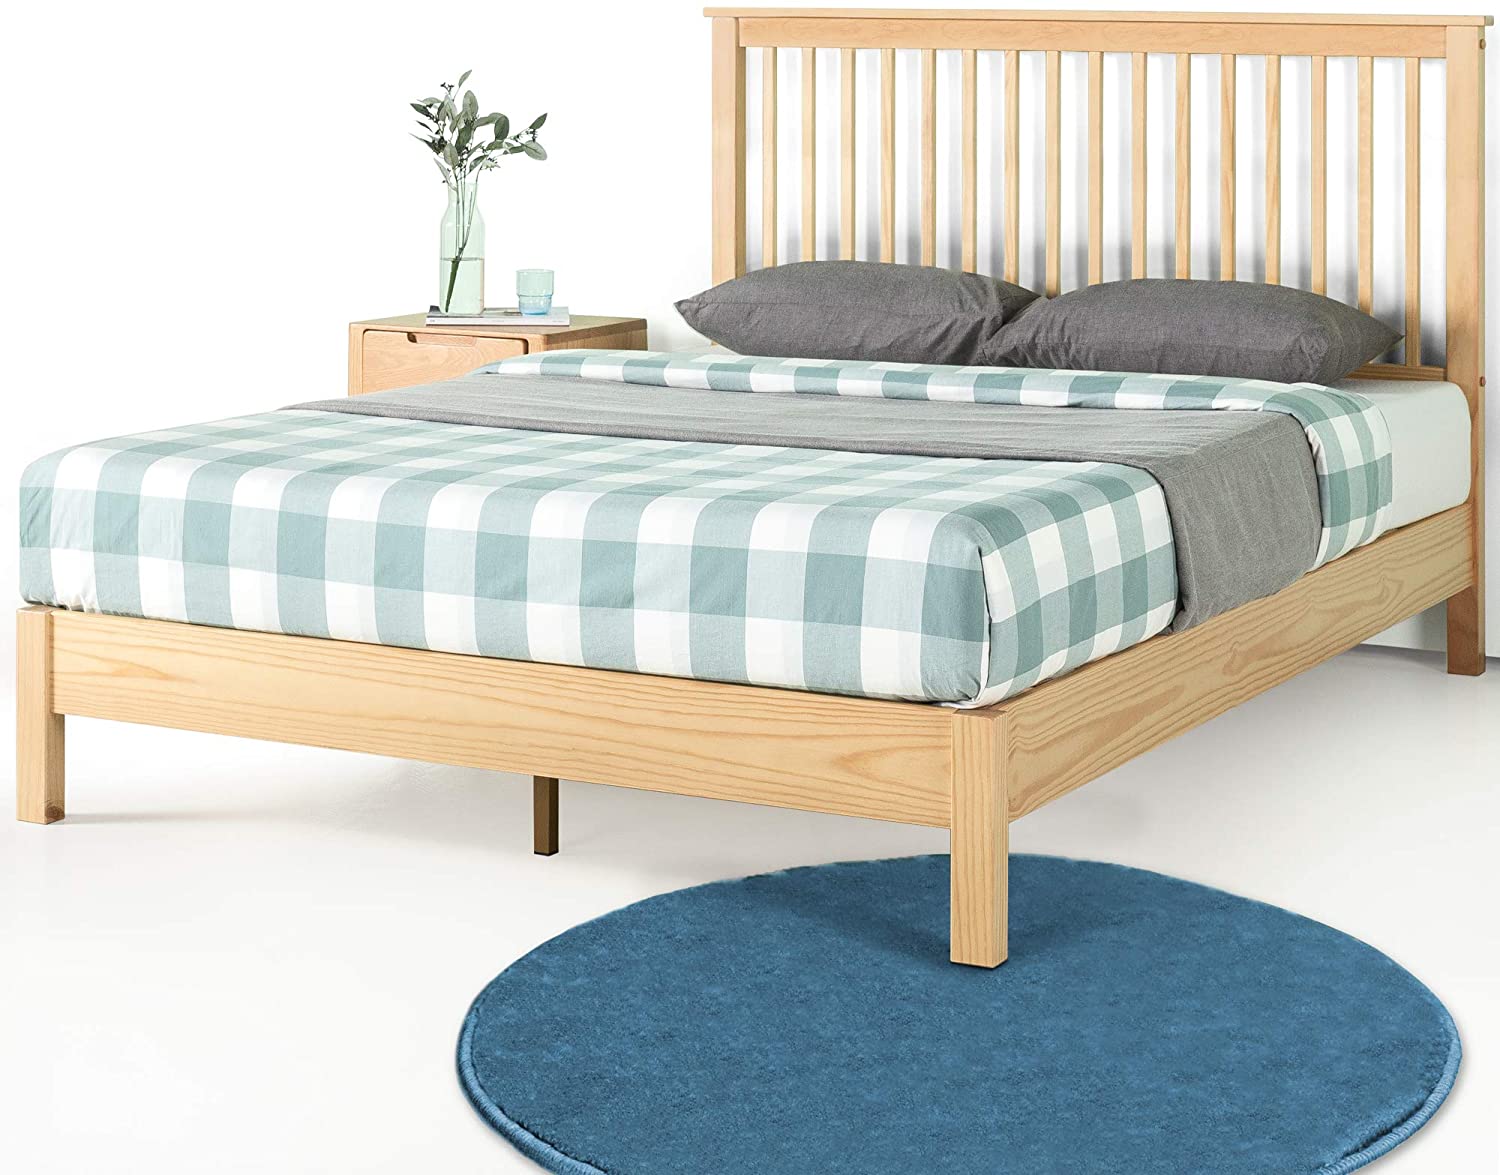 Mẫu giường đóng bằng gỗ sồi đẹp với thiết kế đơn giản